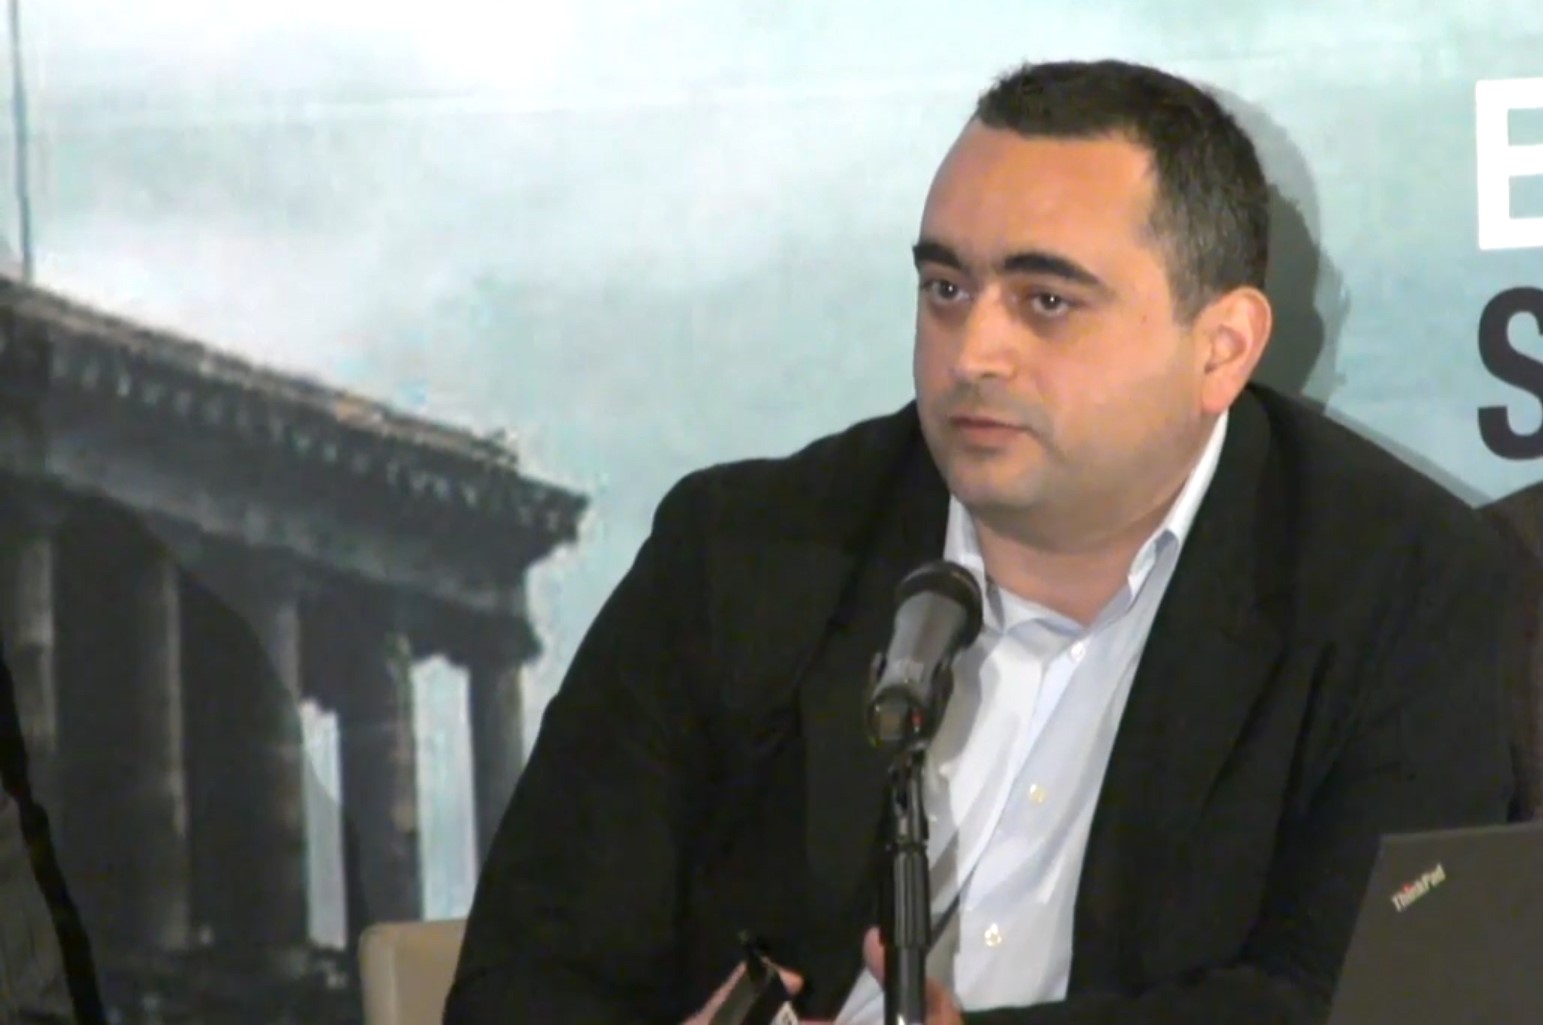 Emil Sanamyan at USC conference in April 2017. Civilnet.